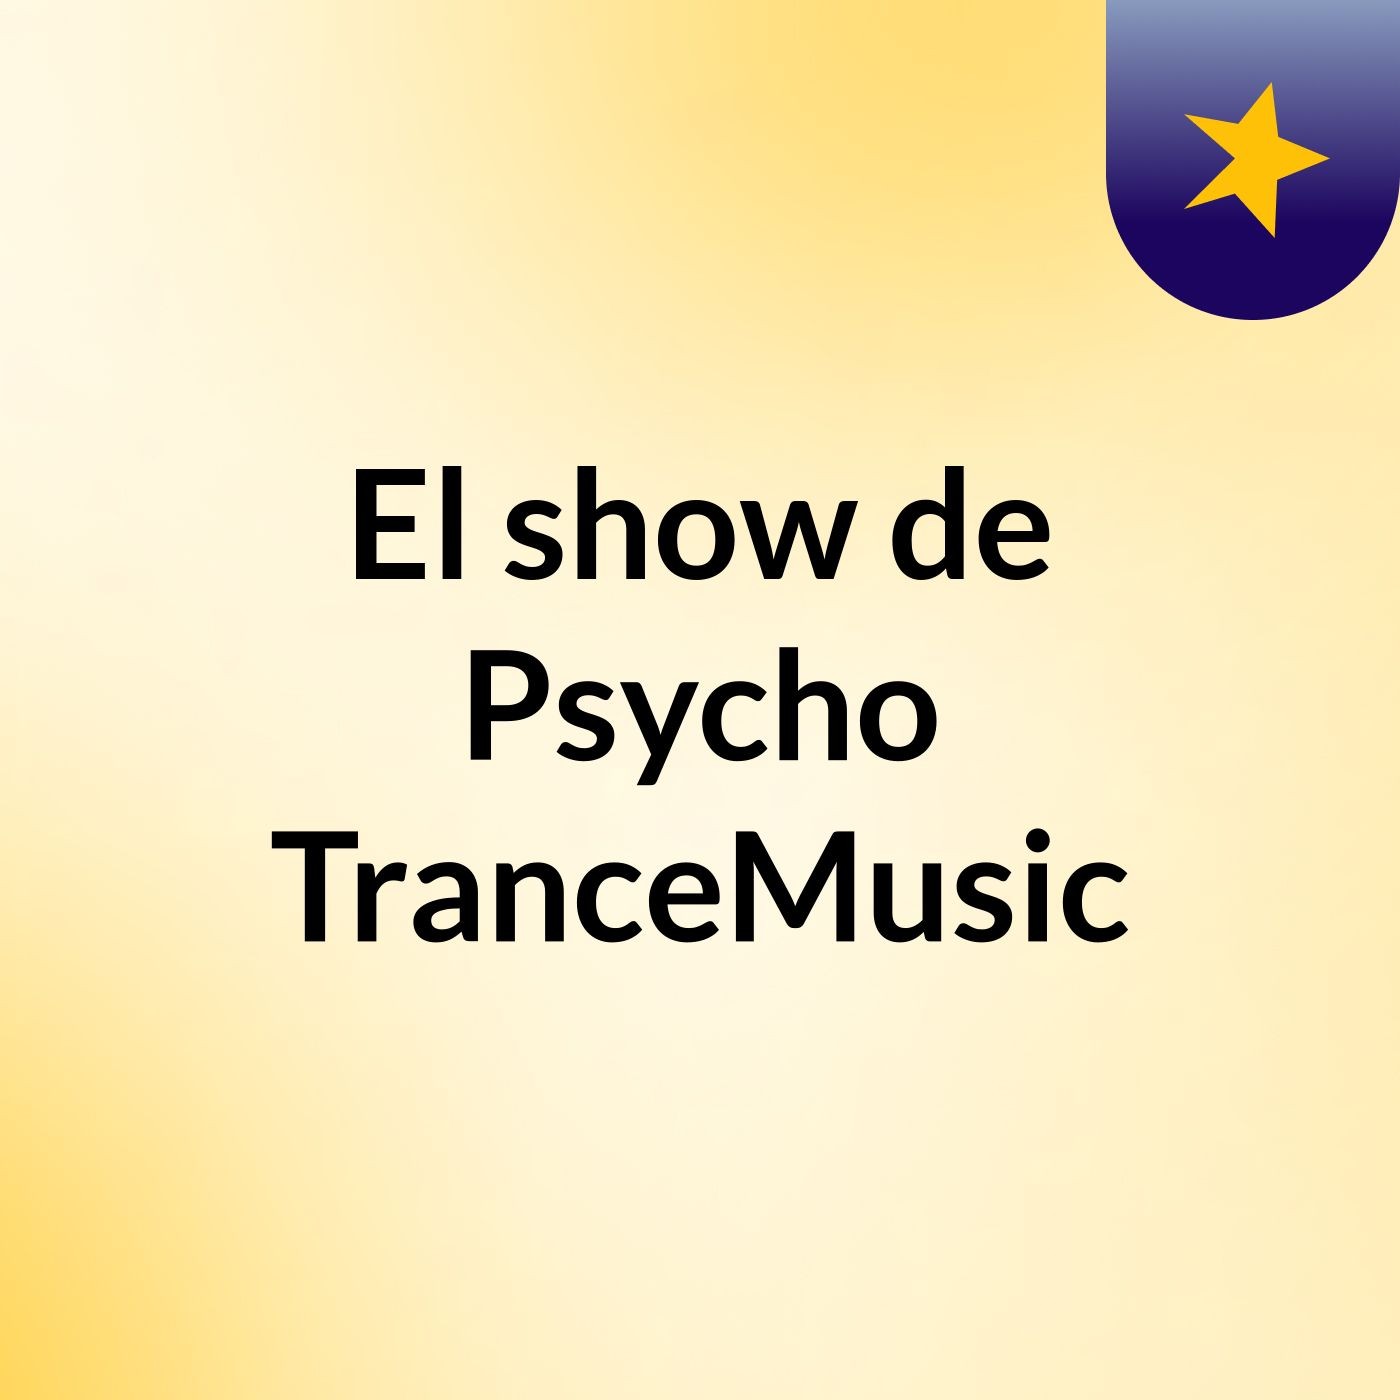 El show de Psycho TranceMusic